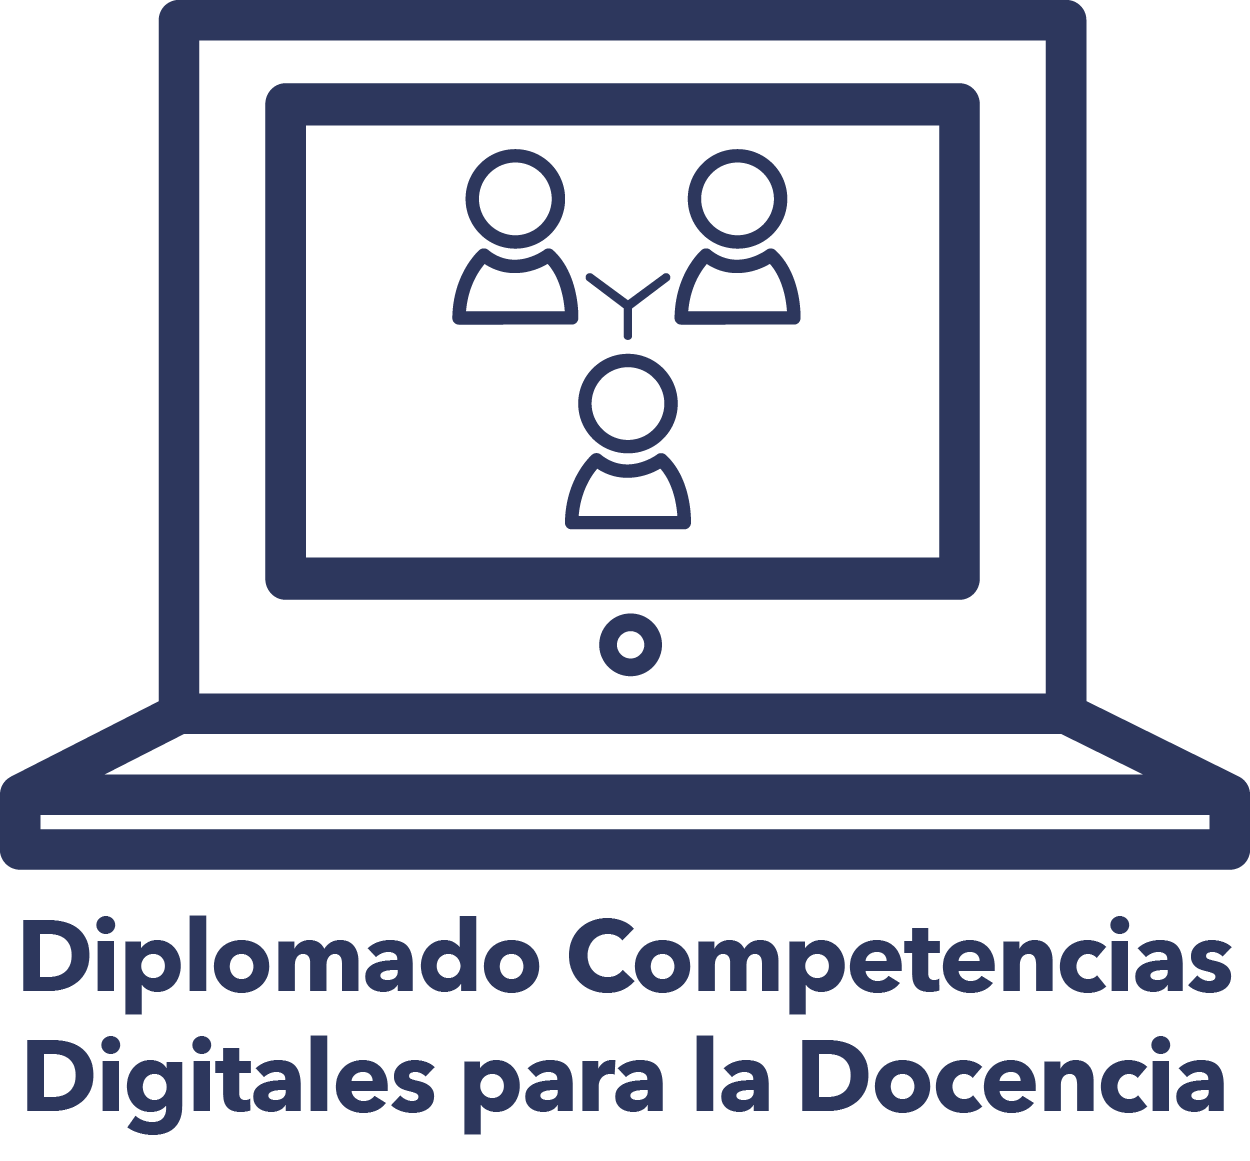 Diplomado Competencias Digitales para la Docencia